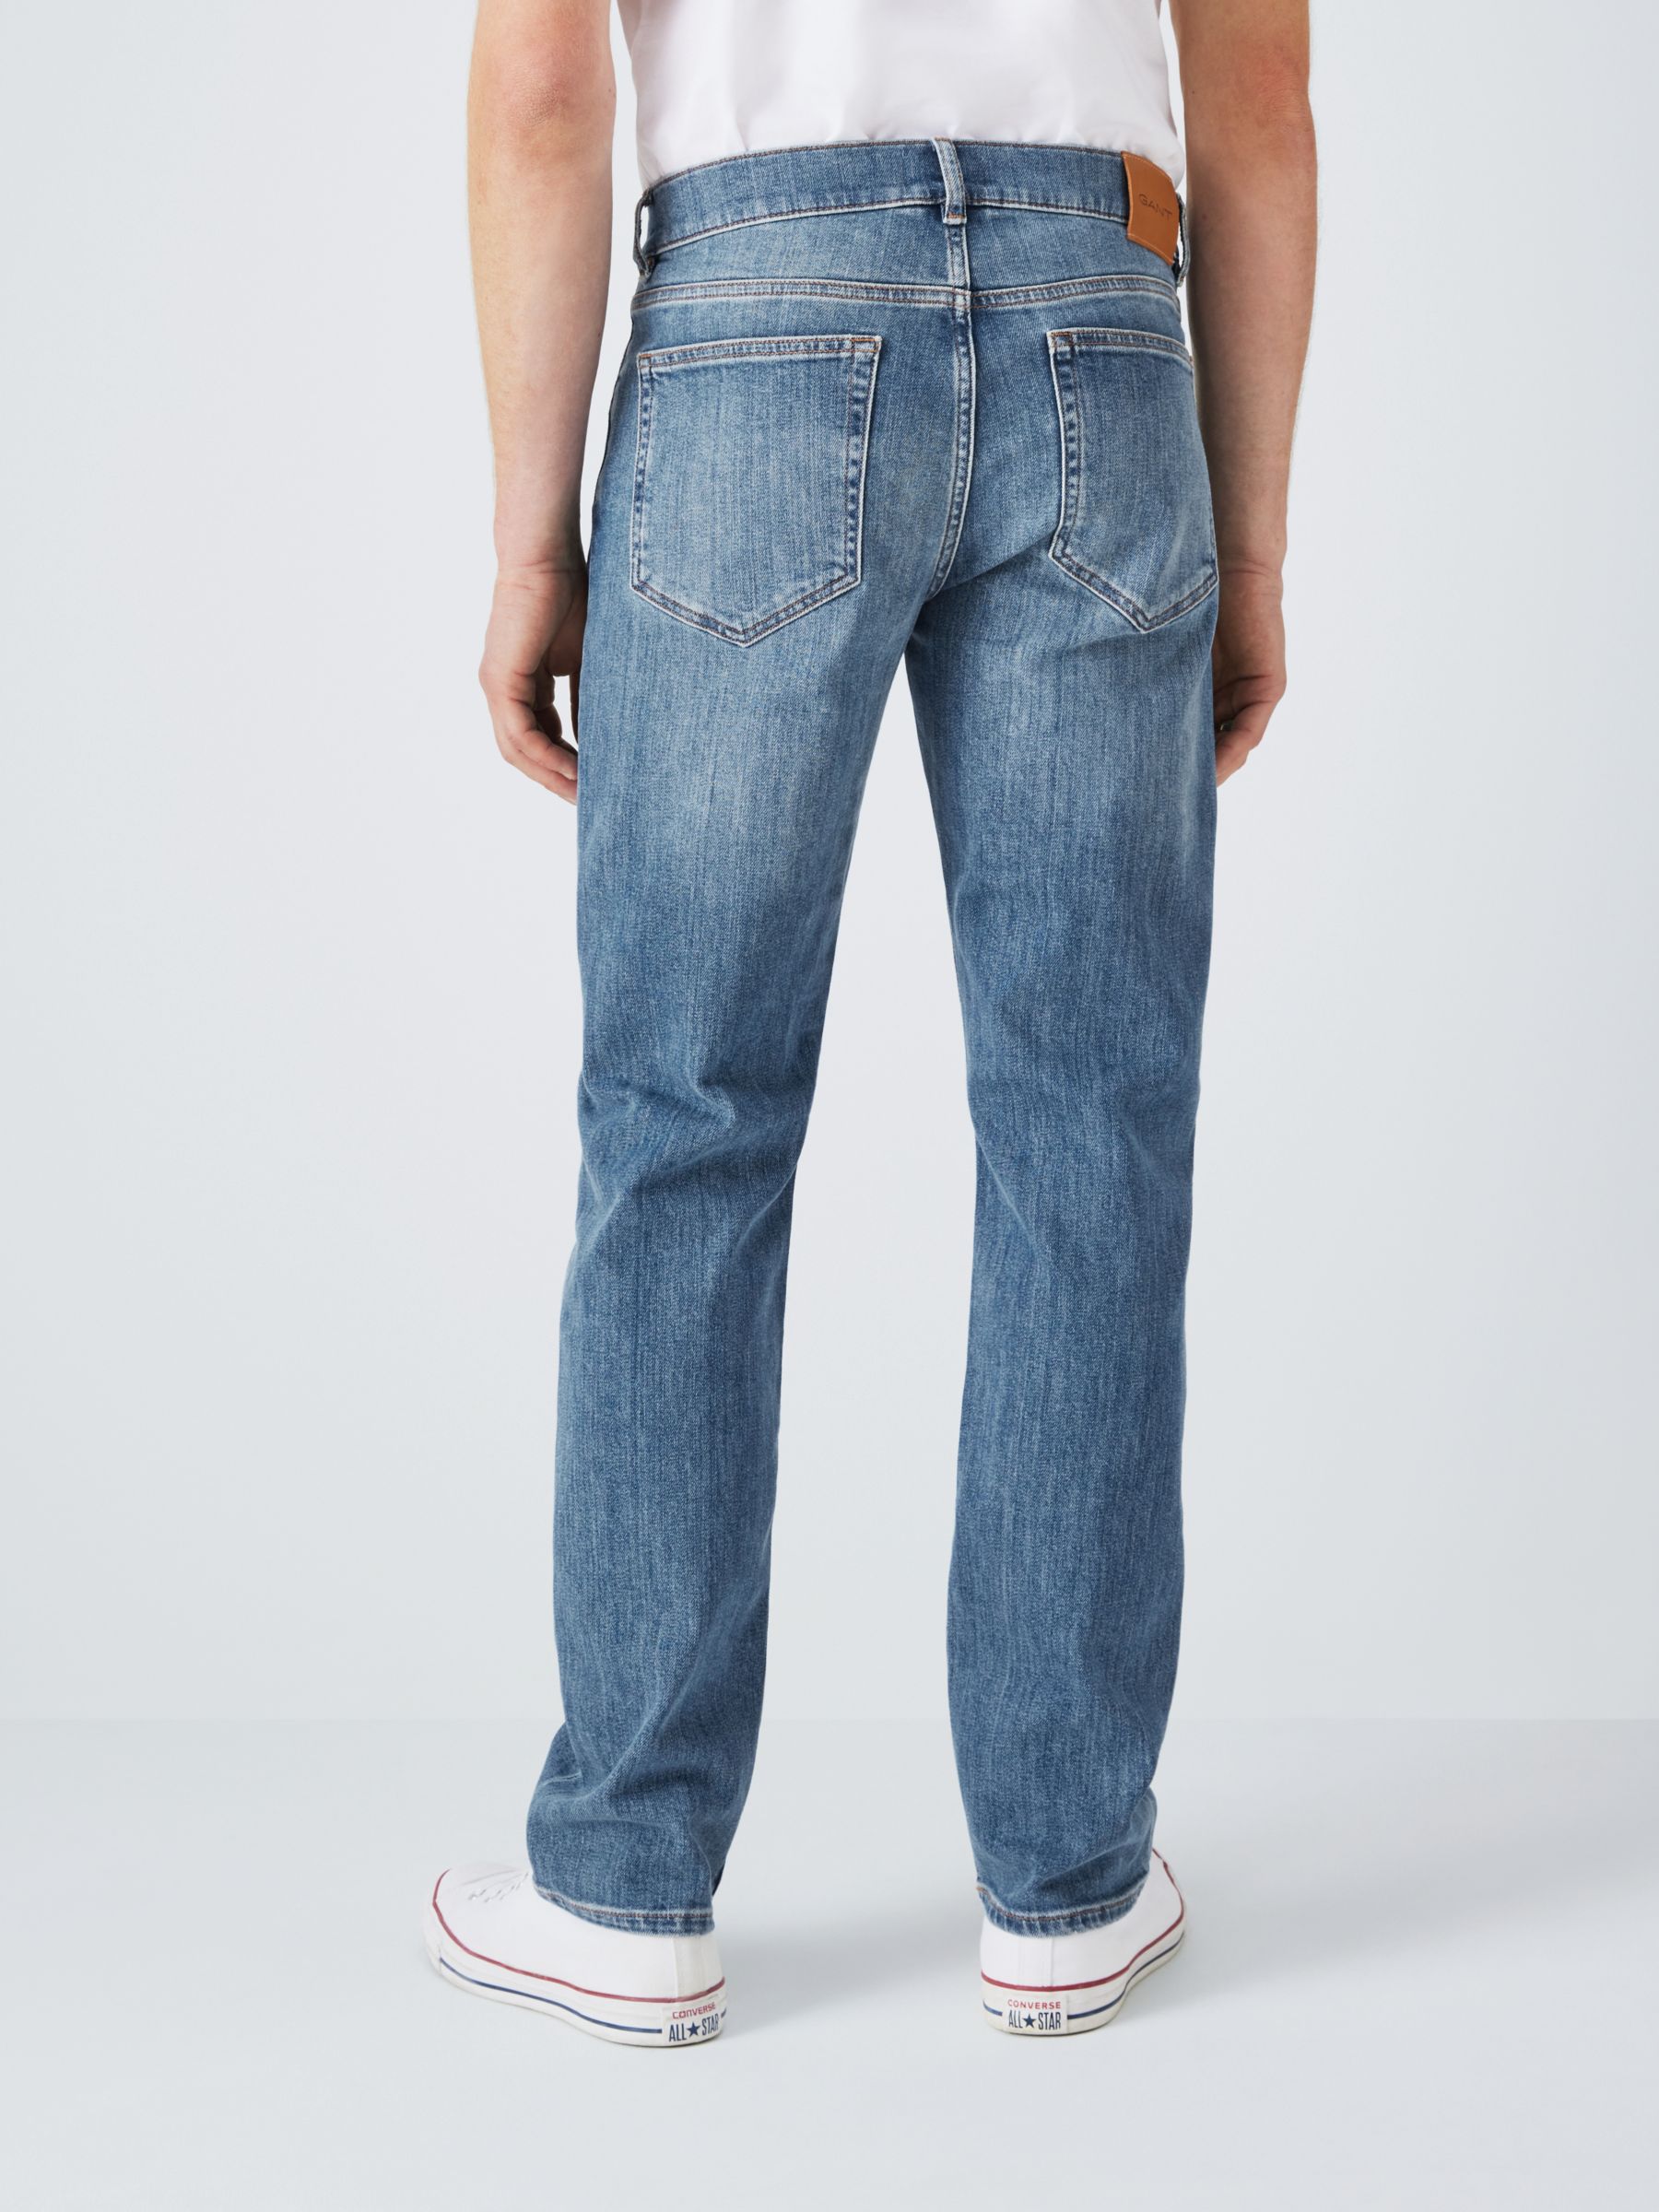 GANT Regular Gant Jeans, Mid Blue, 38R